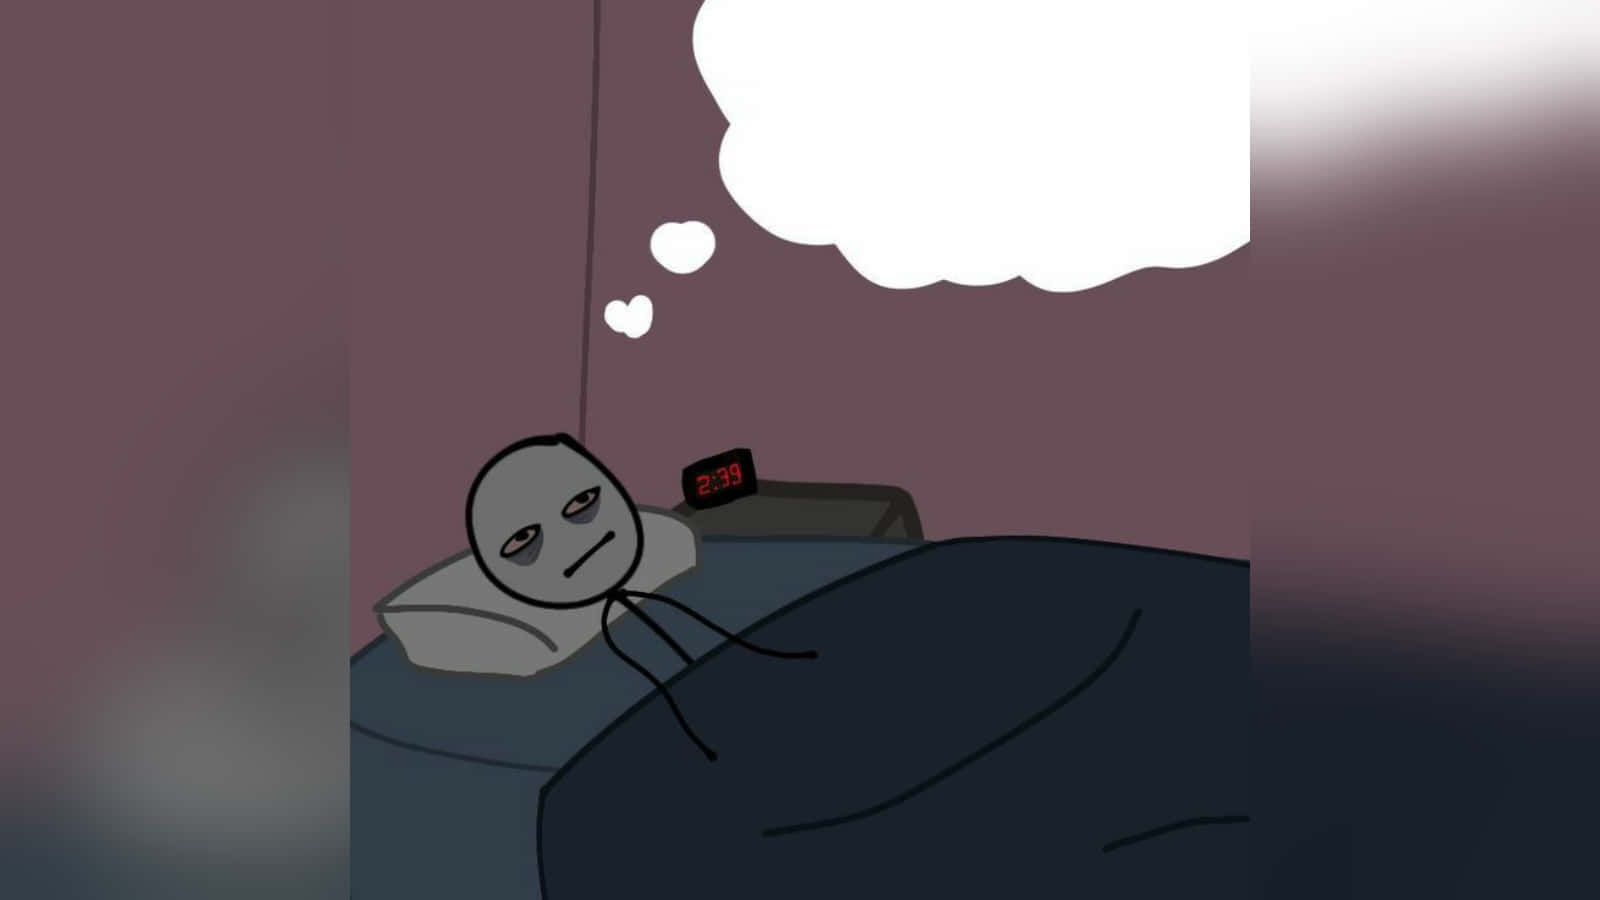 Unpersonaje De Dibujos Animados Está Durmiendo En La Cama Con Una Burbuja De Pensamiento.